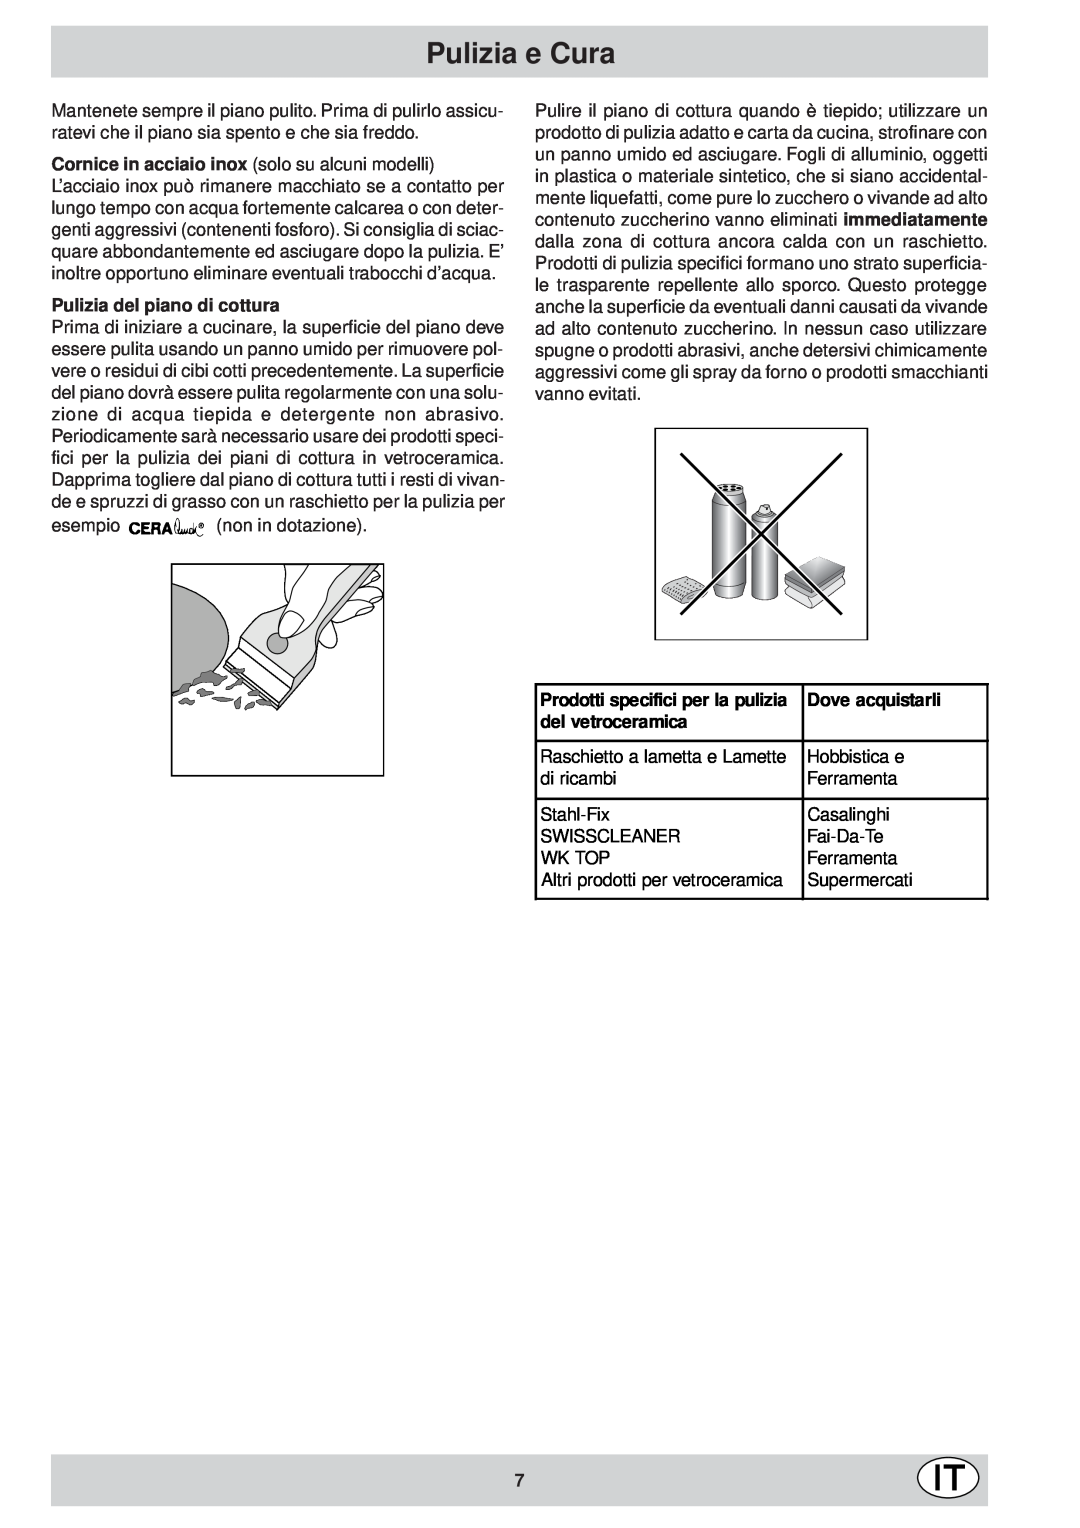 Ariston KT 8104 QO manual Pulizia e Cura, Pulizia del piano di cottura, Dove acquistarli, del vetroceramica 